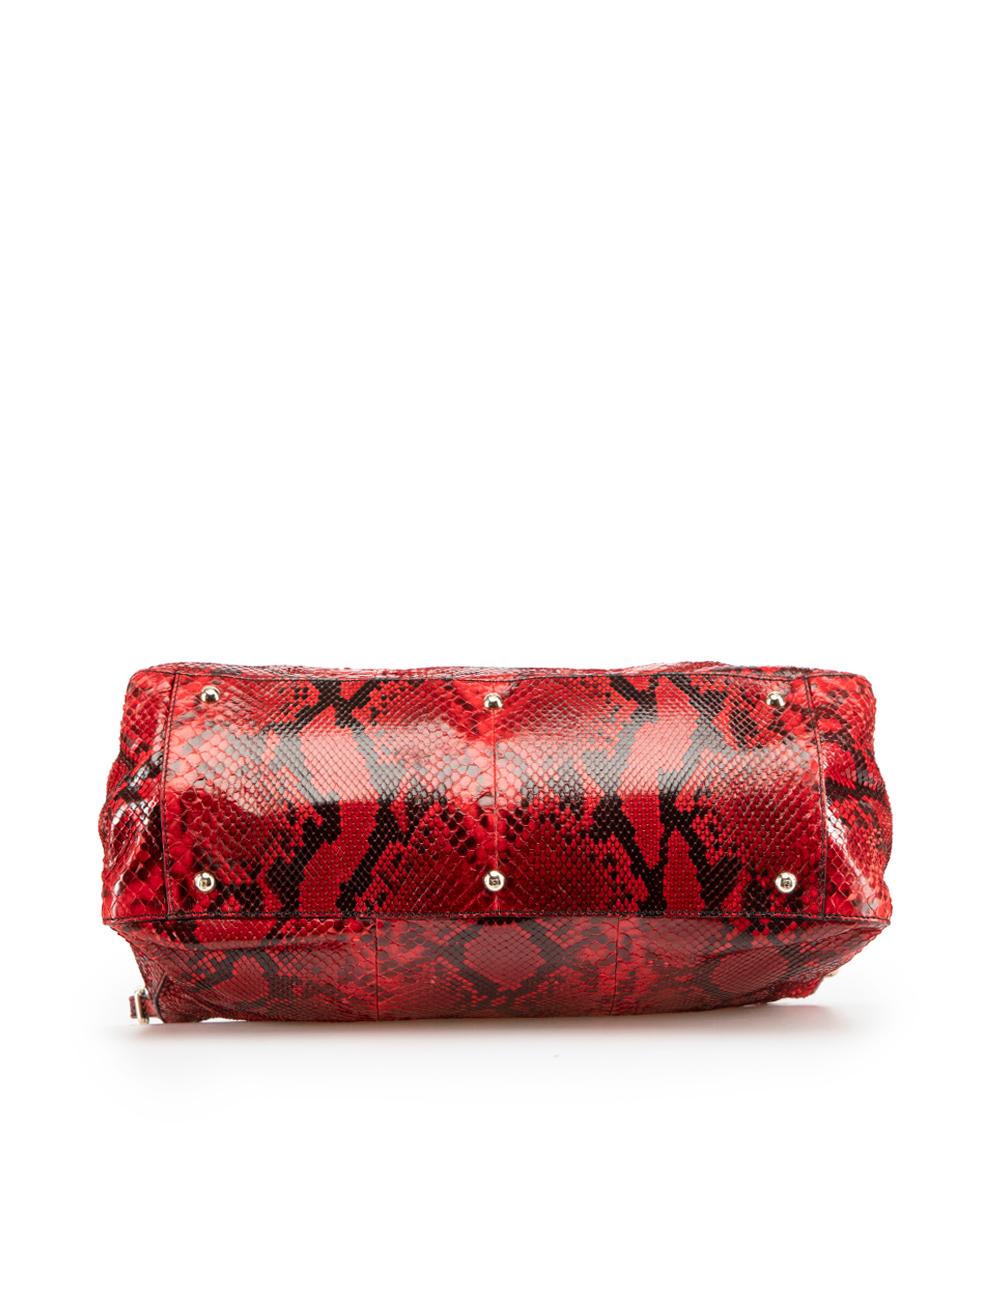 Fendi Women's Red Snakeskin Leather FF Handbag 1